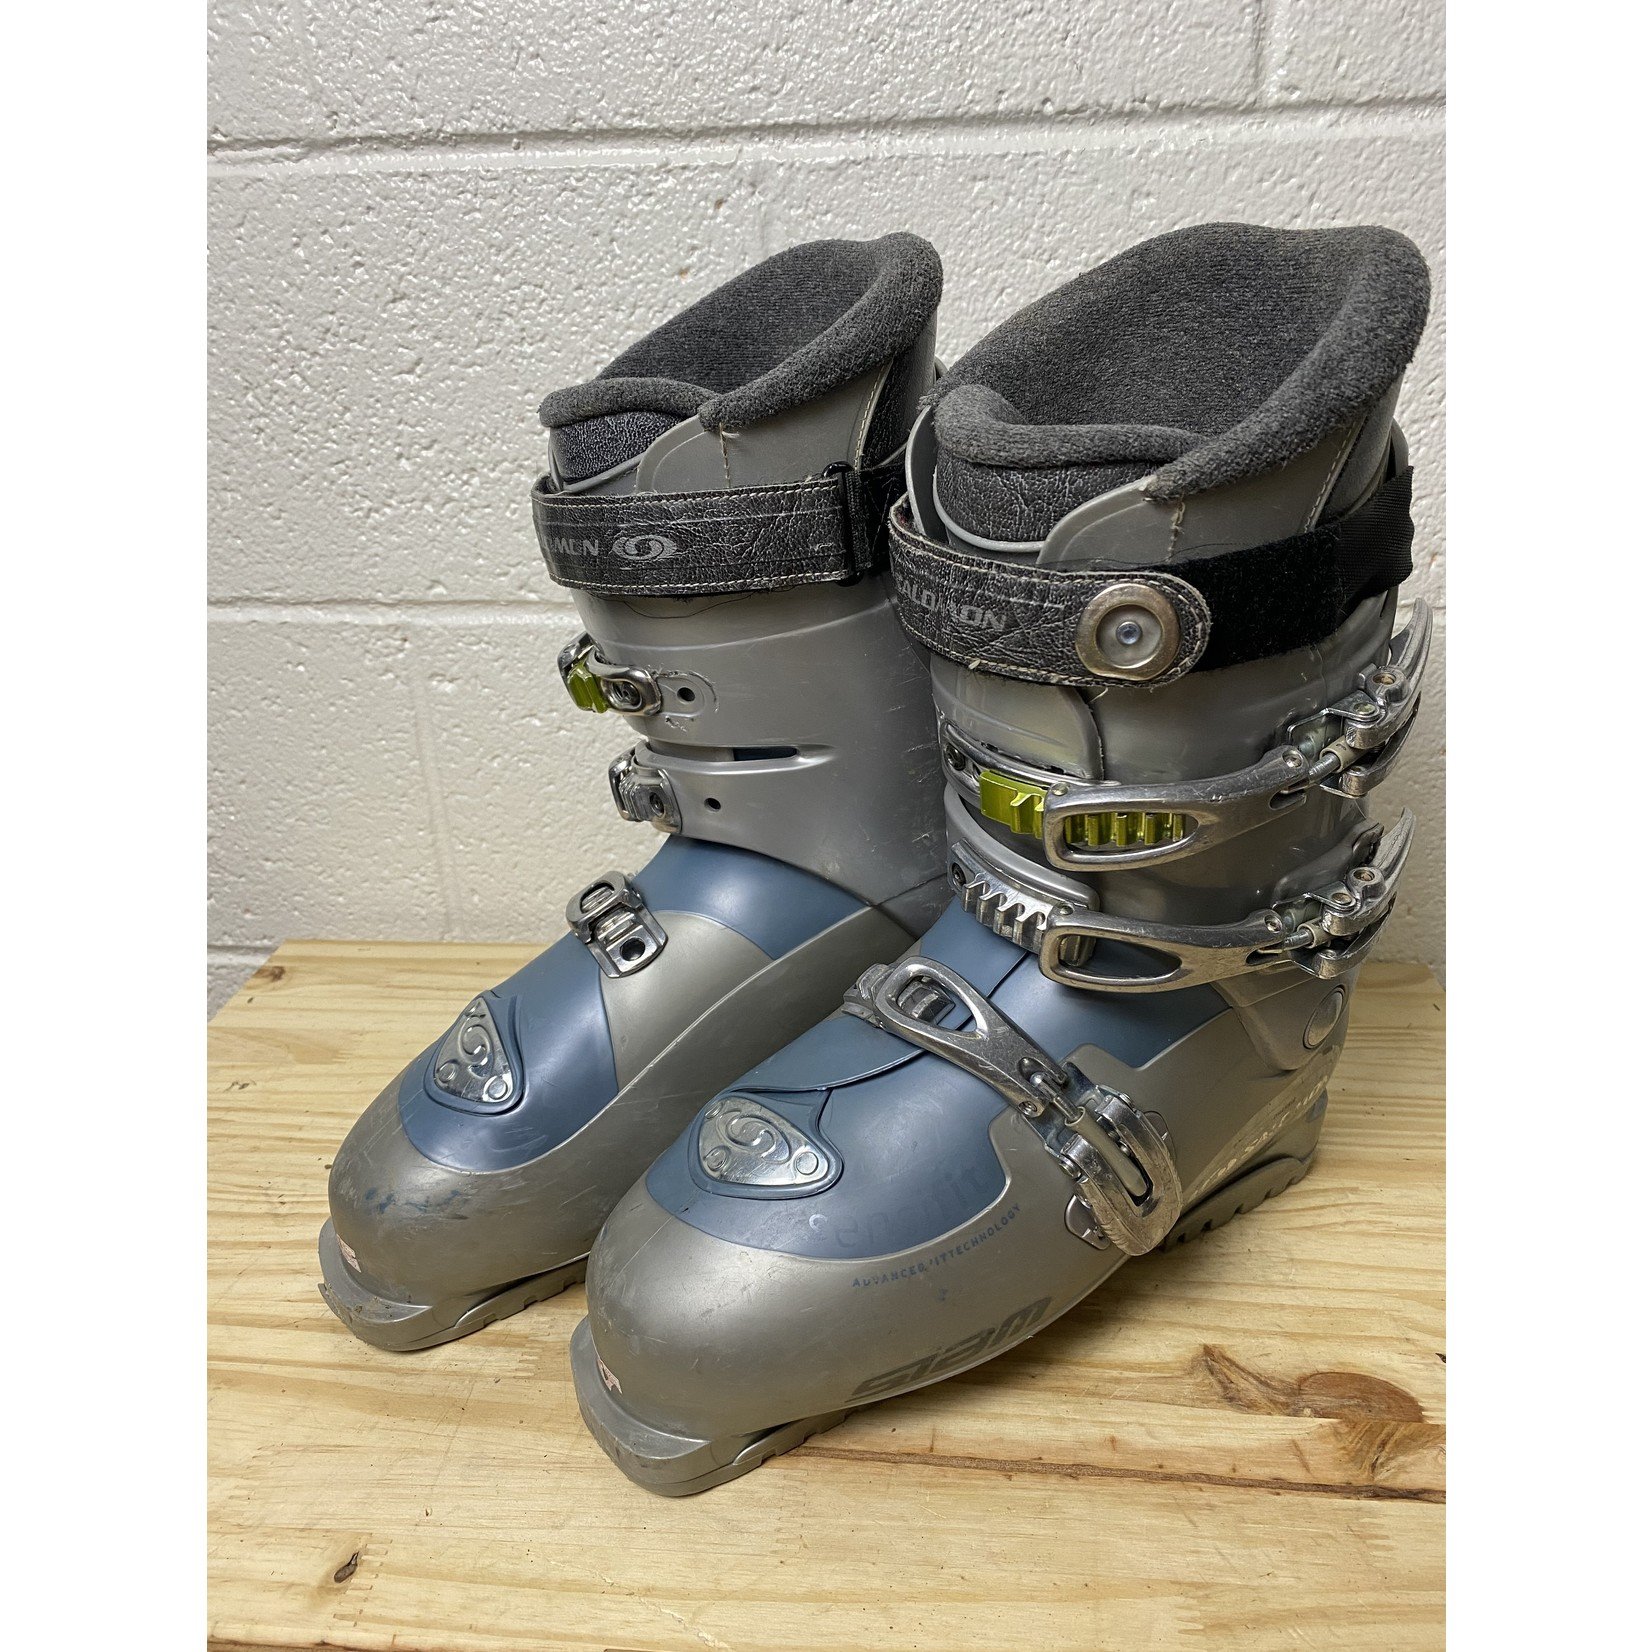 Salomon Salomon Siam 770 Ski Boots - Silver/Blue